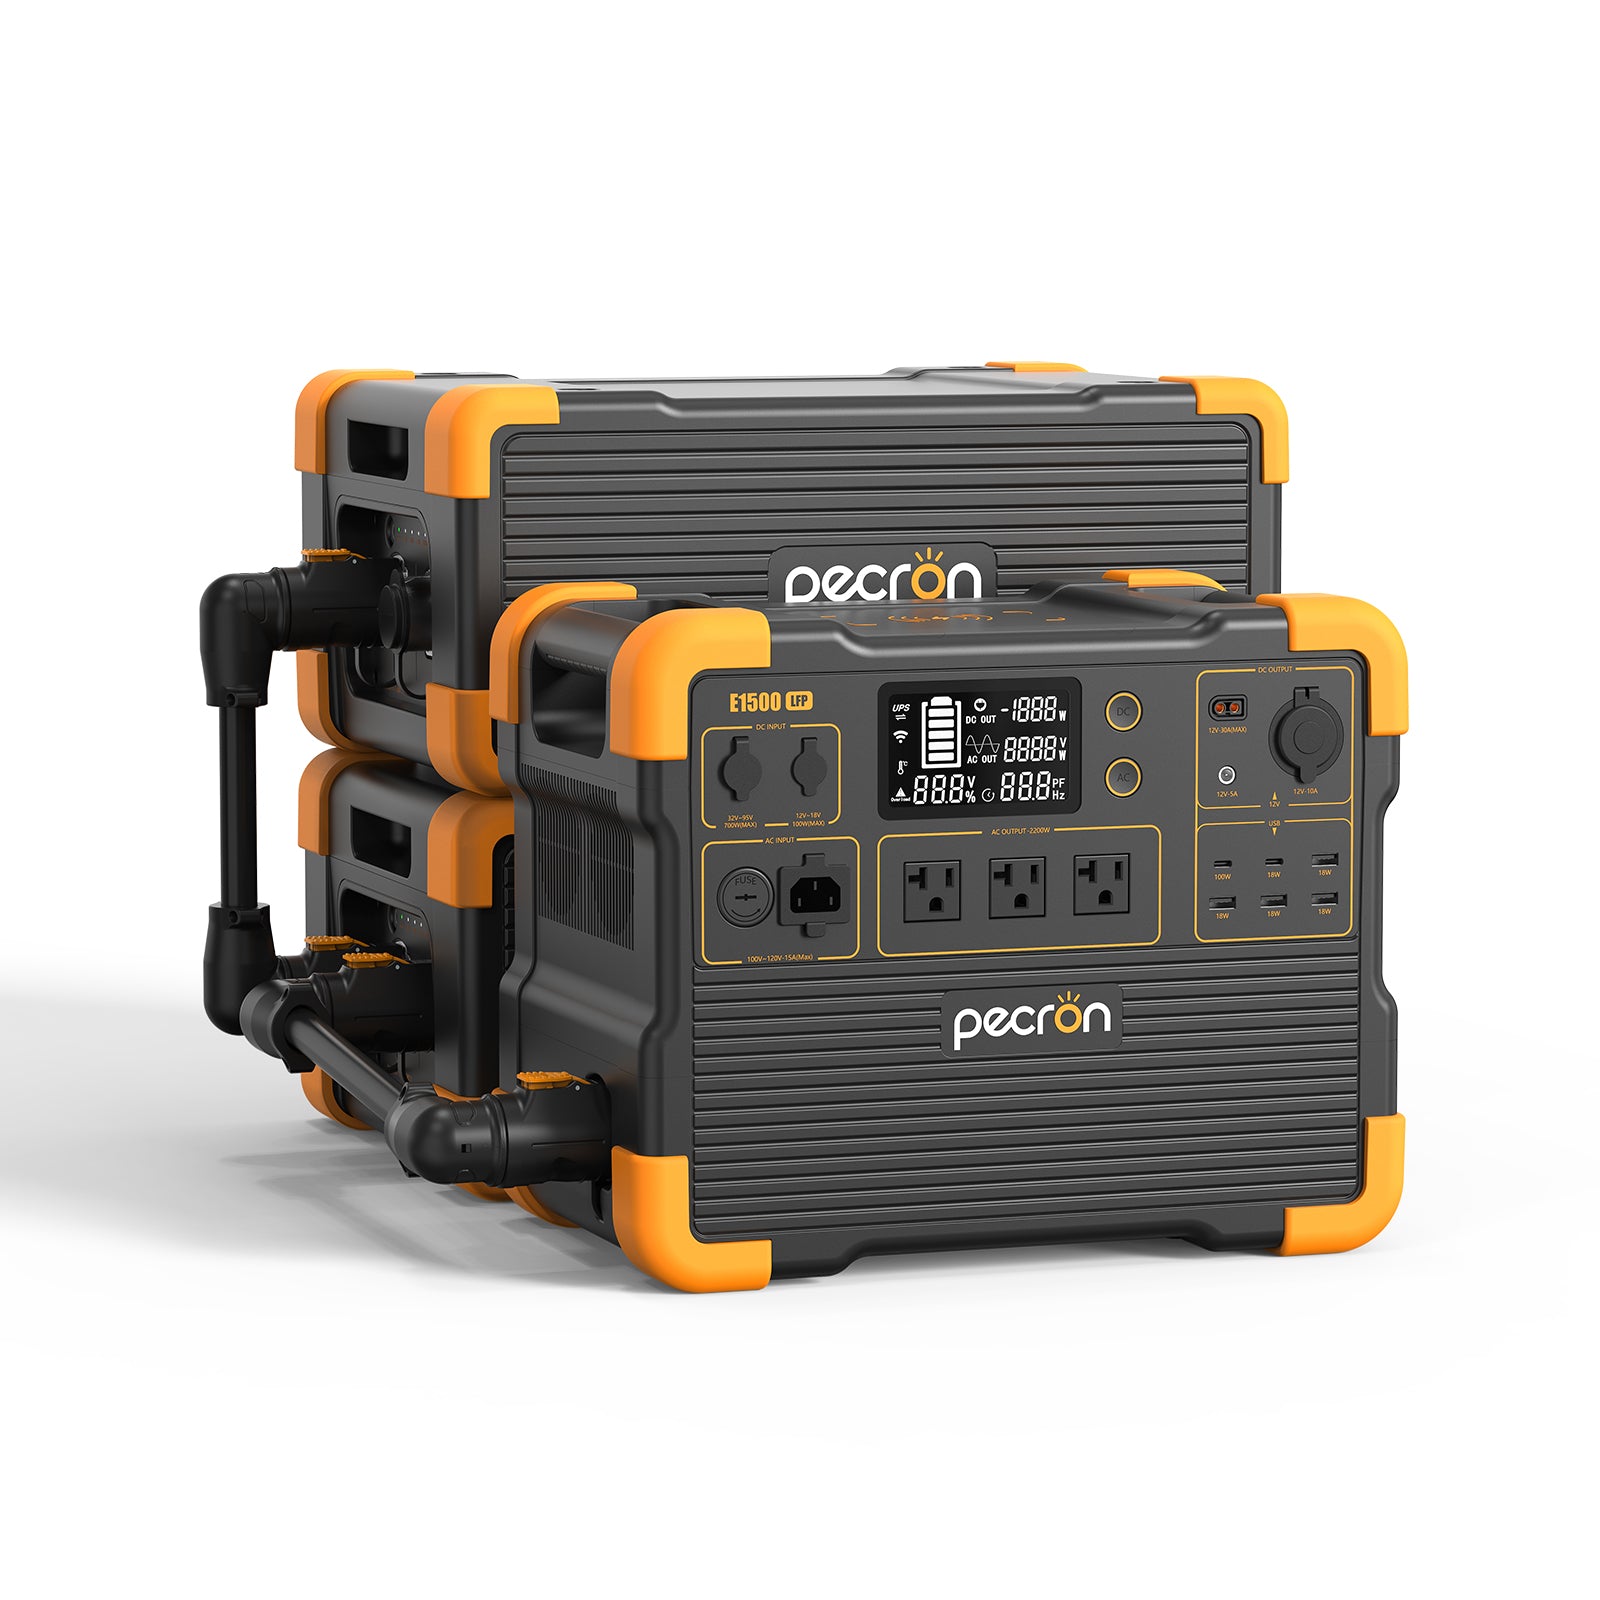 PECRON E1500LFPポータブル電源